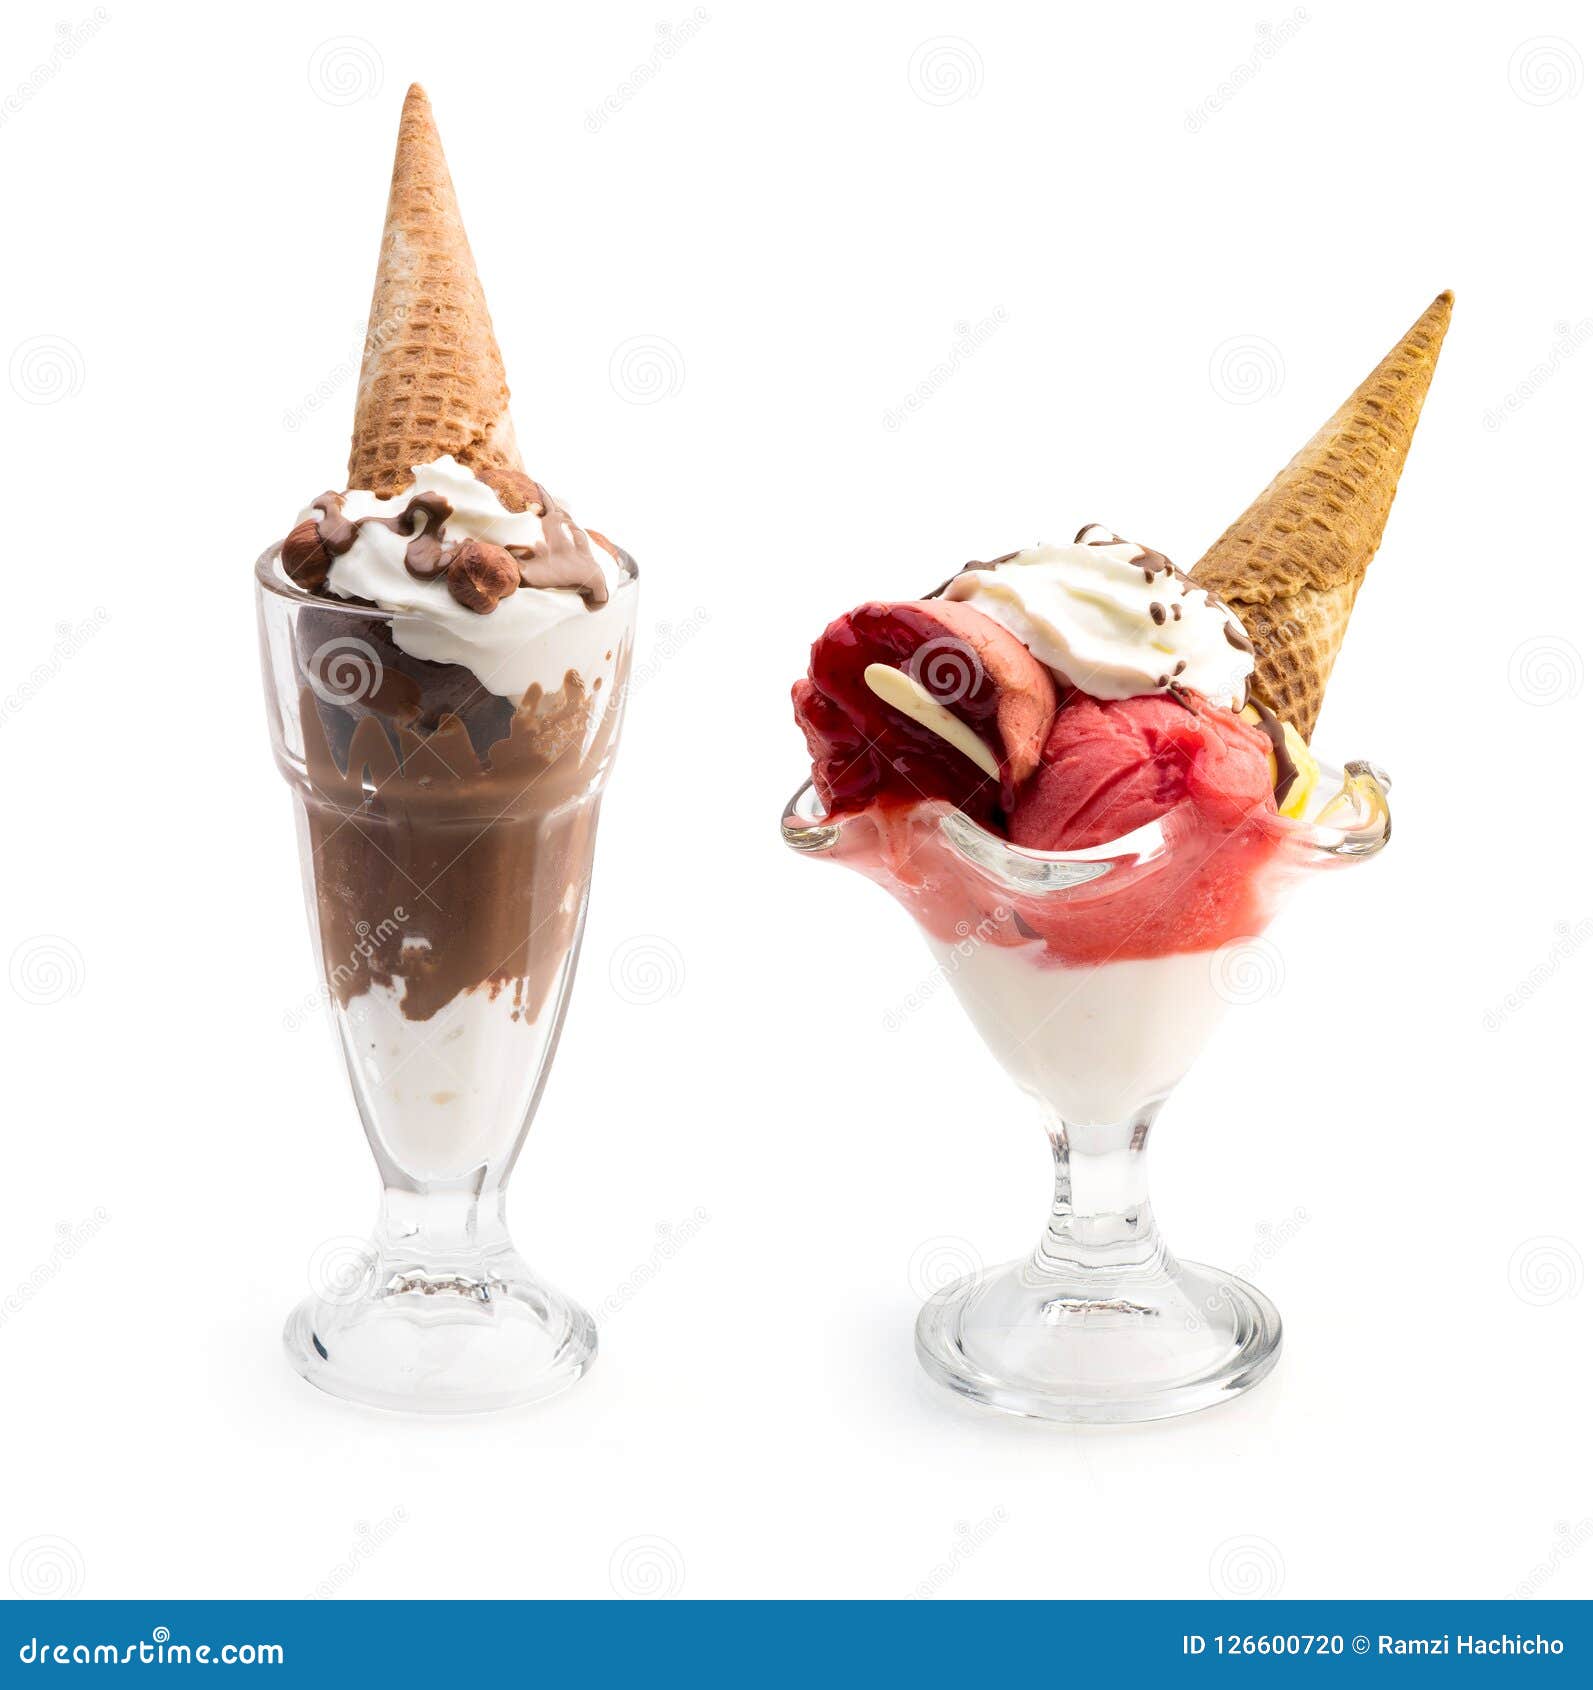 草莓冰淇淋图片大全-草莓冰淇淋高清图片下载-觅知网